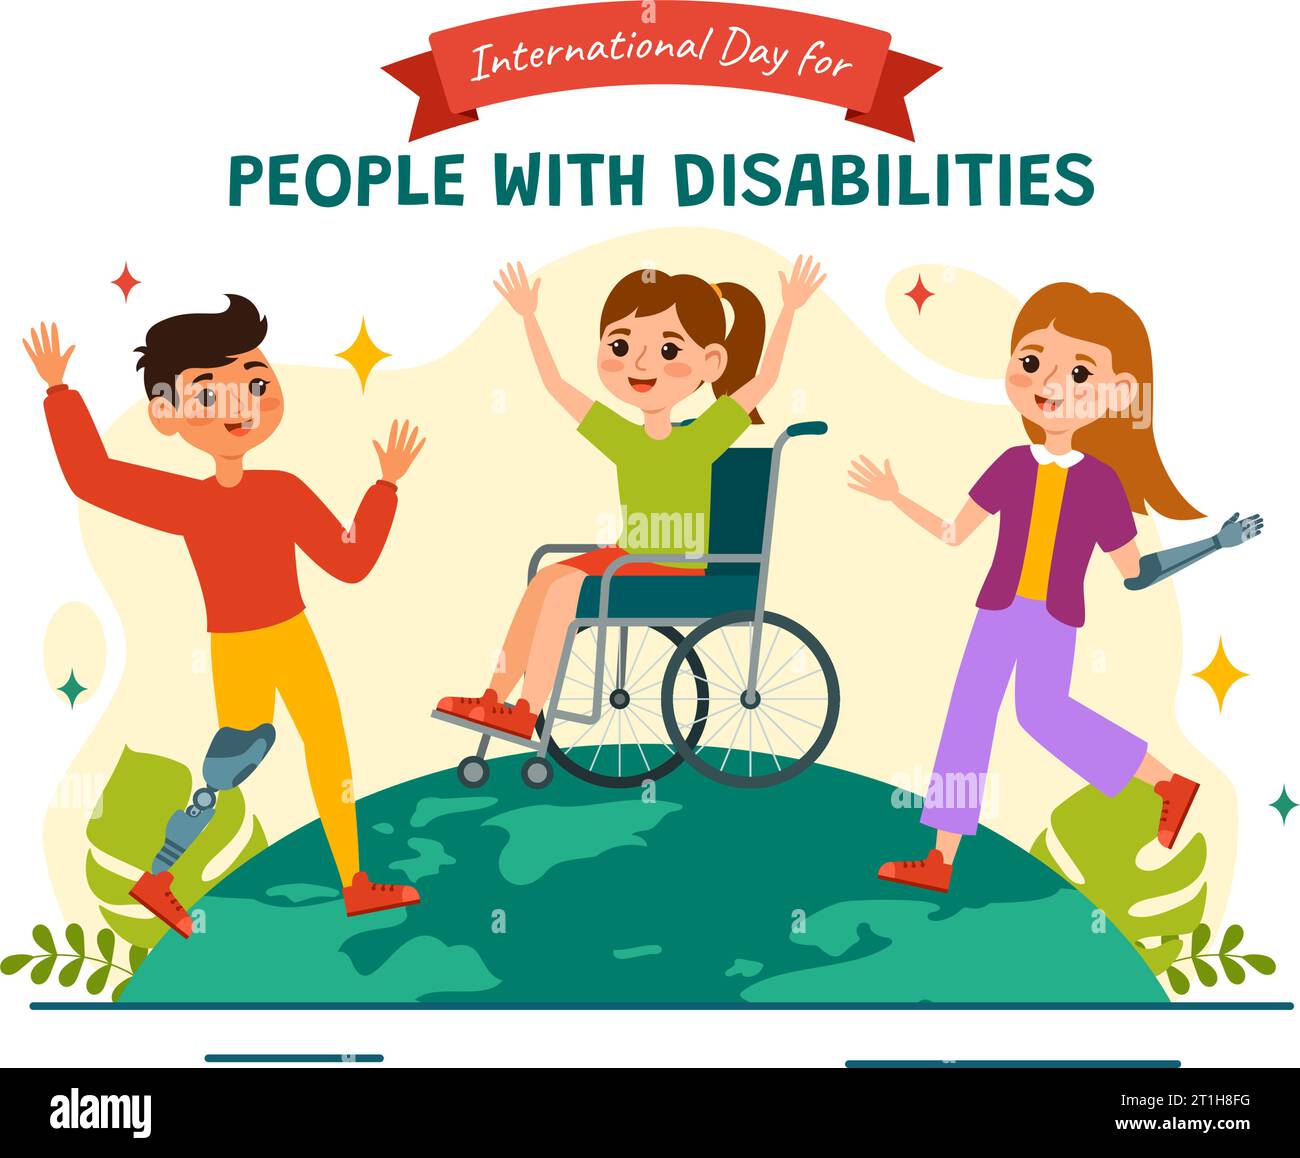 Journée internationale pour les personnes handicapées Illustration de conception vectorielle le 3 décembre pour sensibiliser à la situation des personnes handicapées Illustration de Vecteur